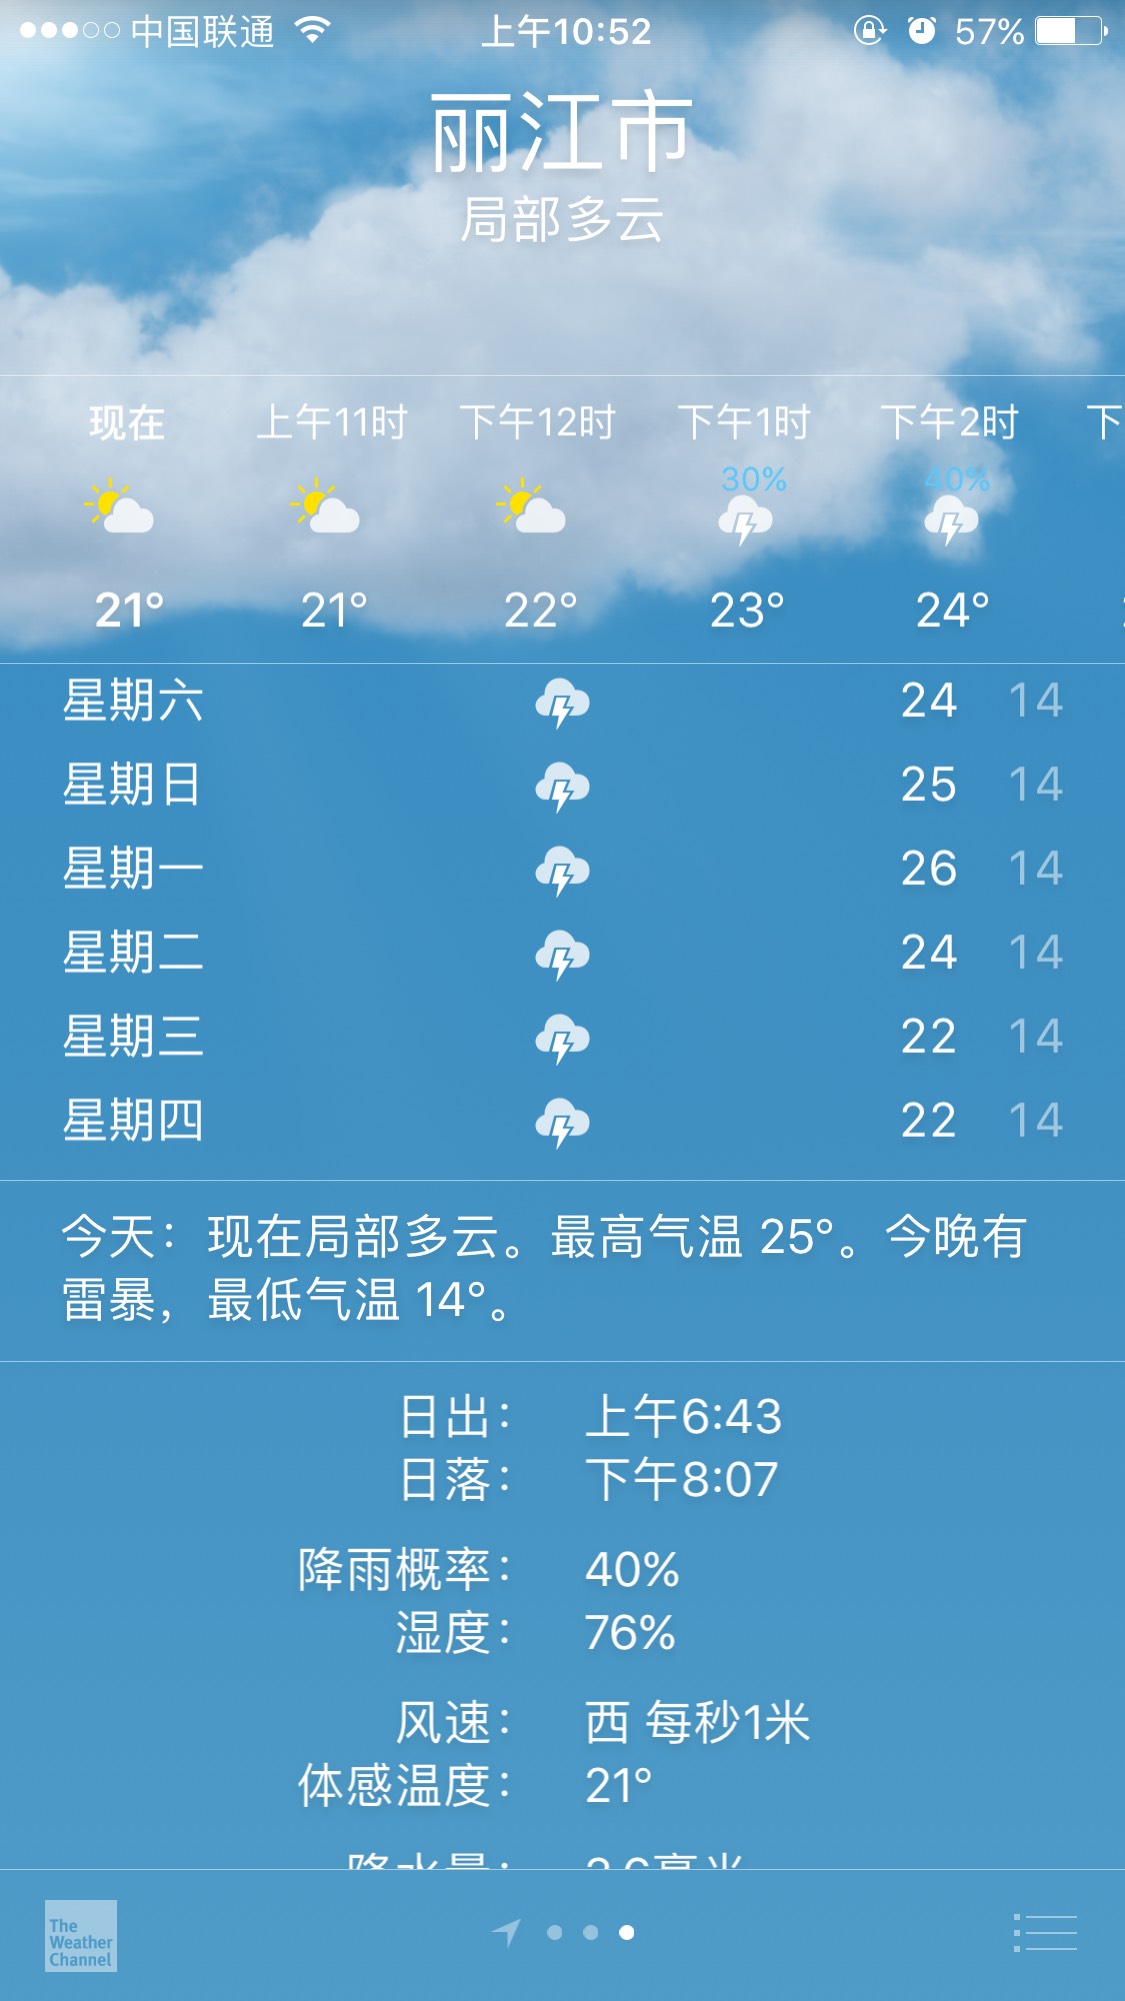 急!8月5号----10号去丽江 看天气都是雷雨  丽江 天气丽江穿衣指南 a.